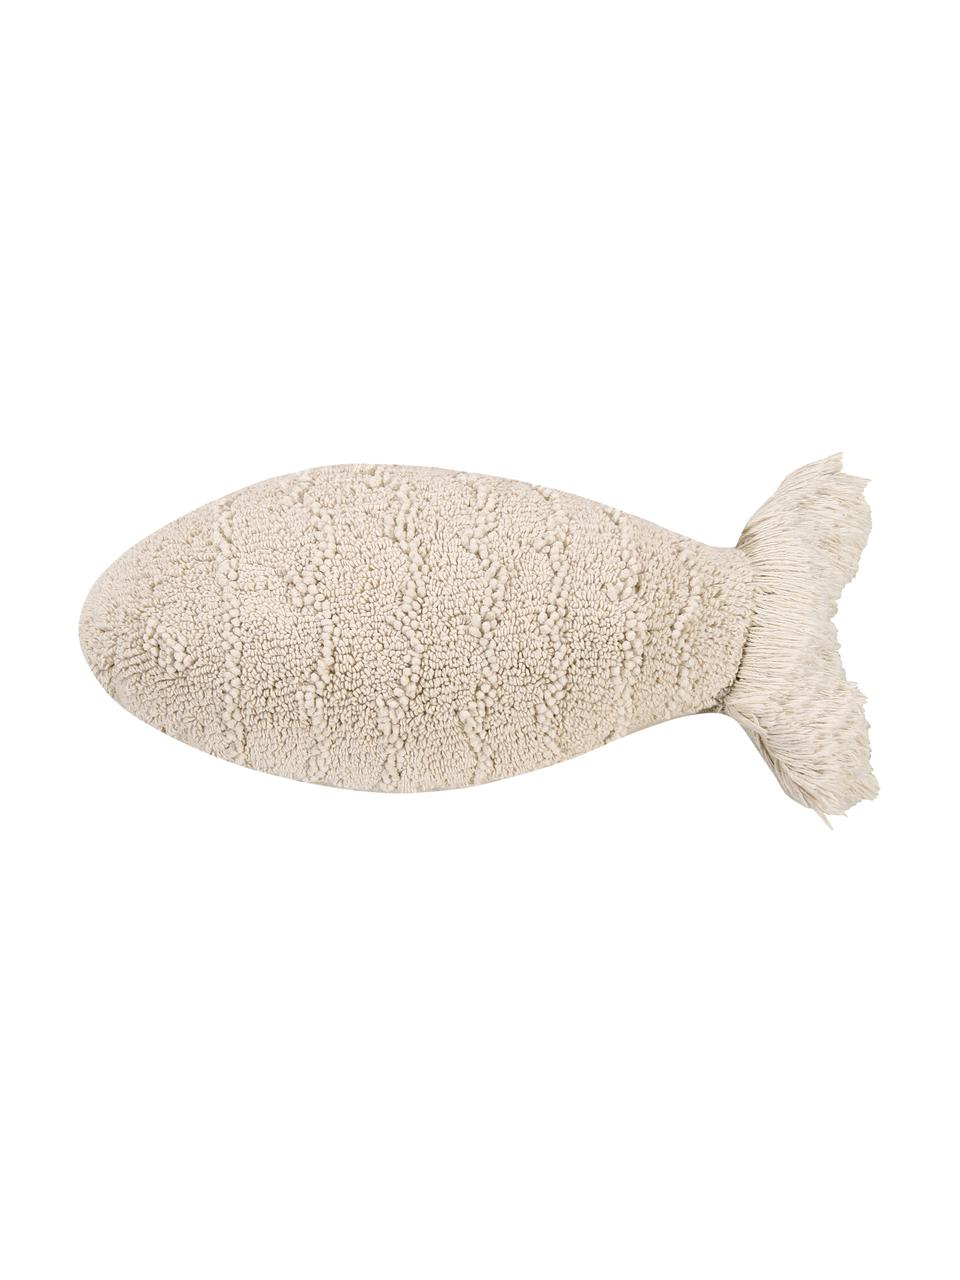 Kissen Baby Fish, mit Inlett, Bezug: 97% Baumwolle, 3% recycel, Beige, B 30 x L 60 cm